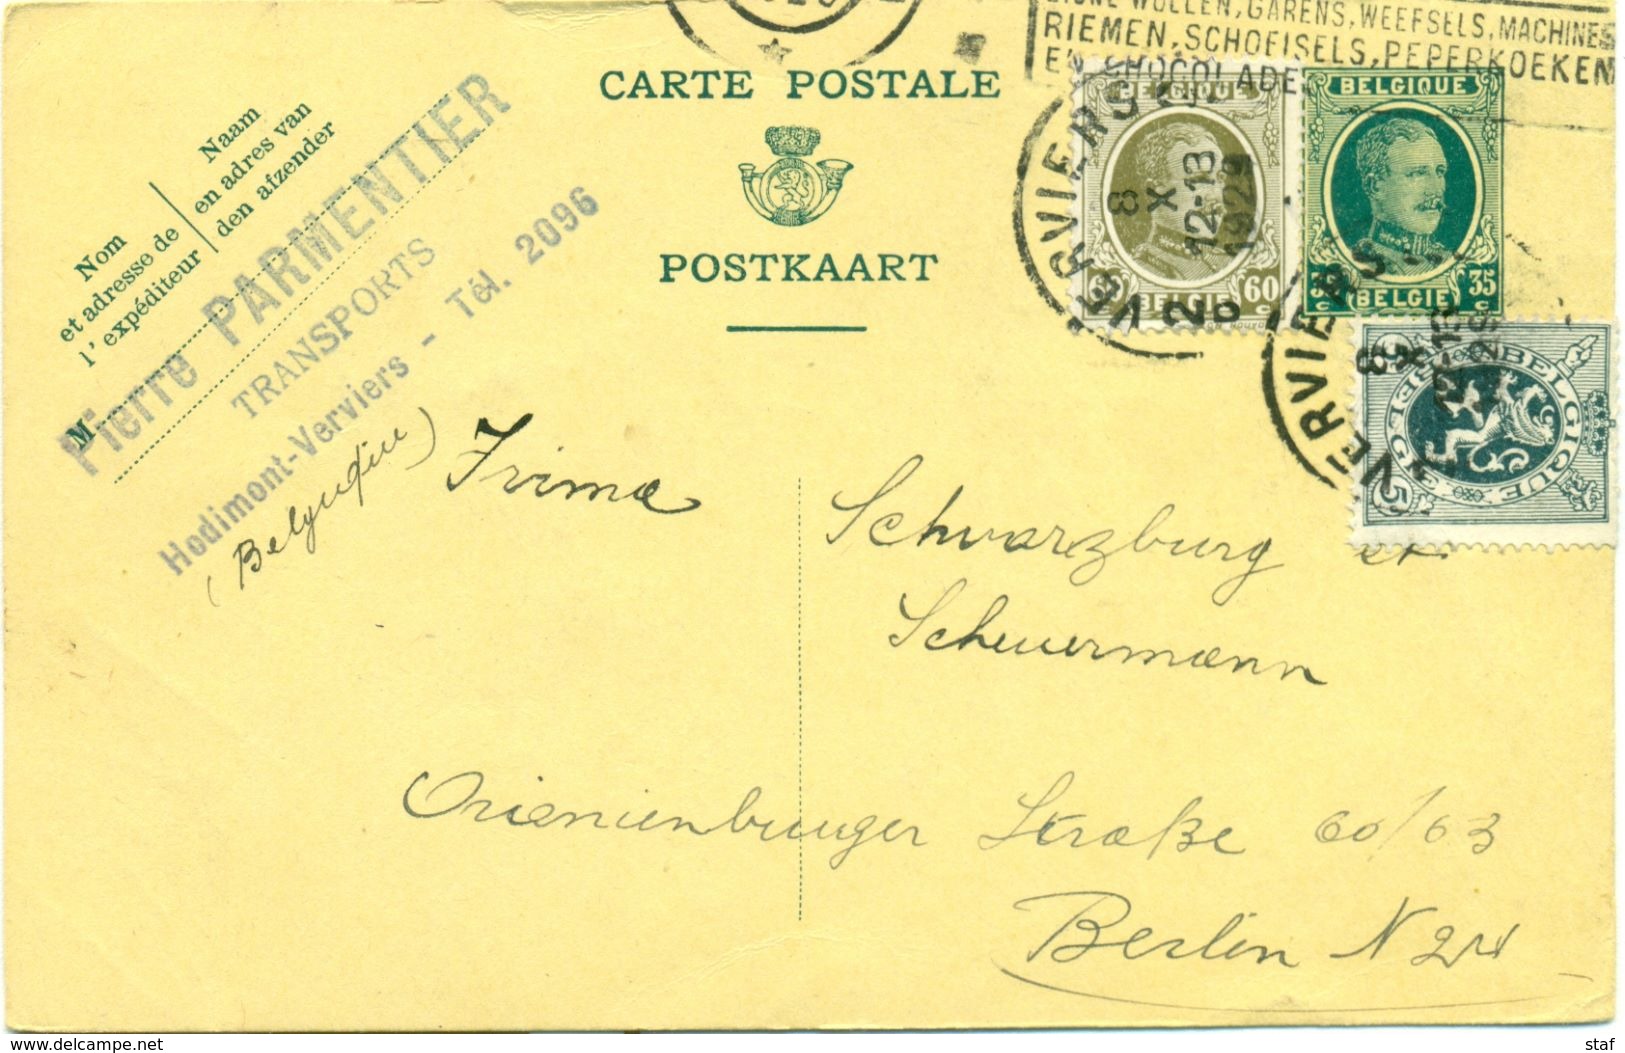 Carte Postale De Pierre Parmentier Transports à Hodimont - Verviers : 1929 - Transportmiddelen